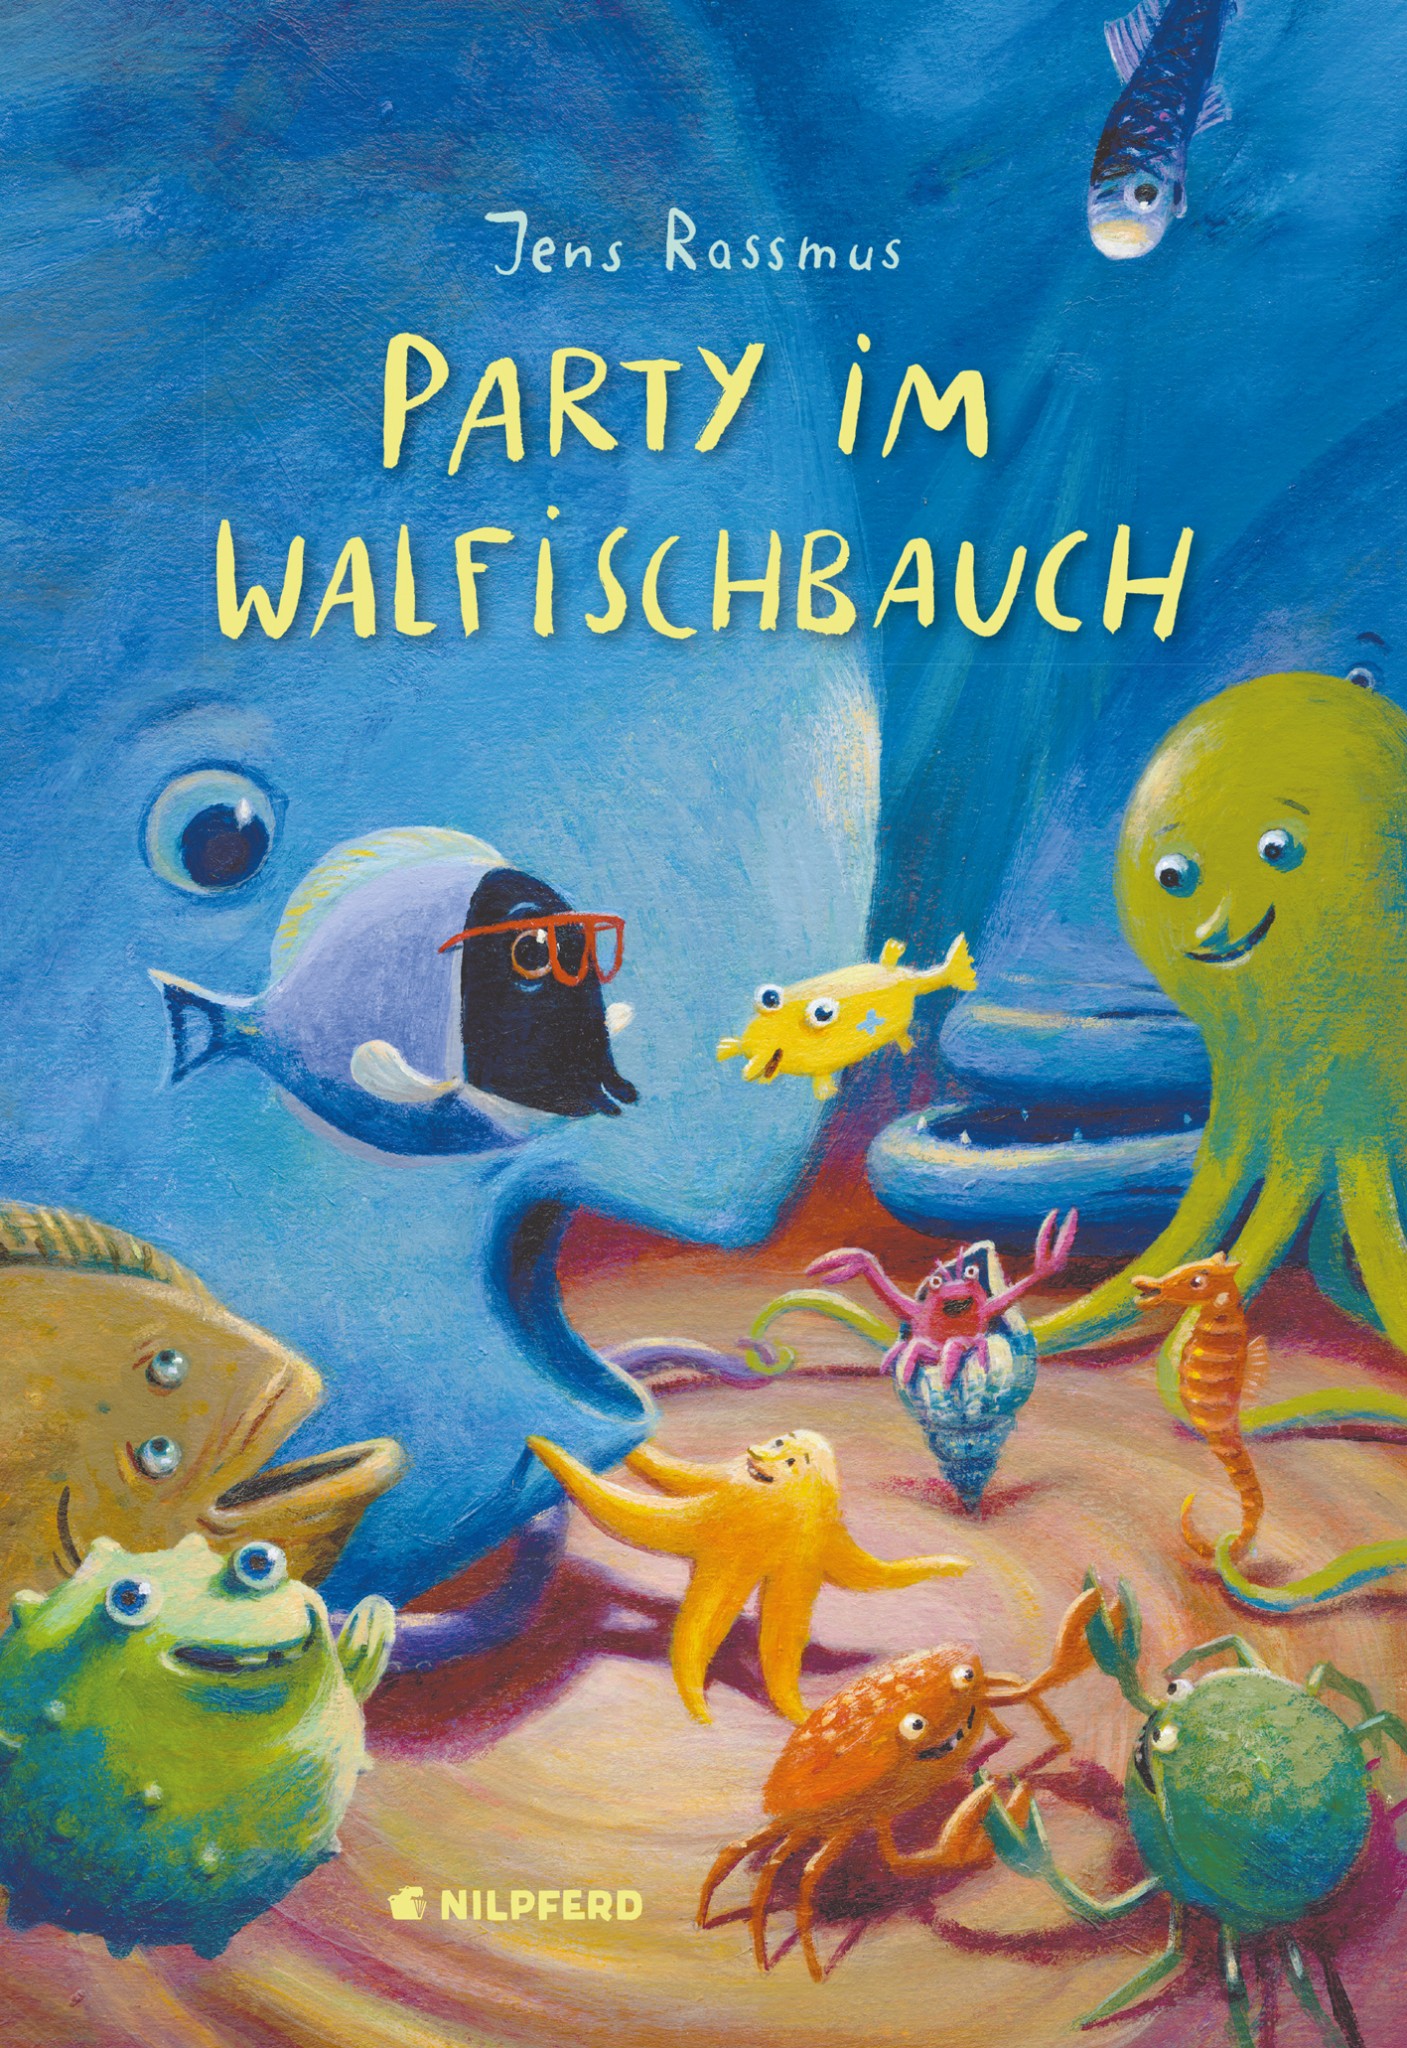 Party im Walfischbauch, Nilpferd Verlag